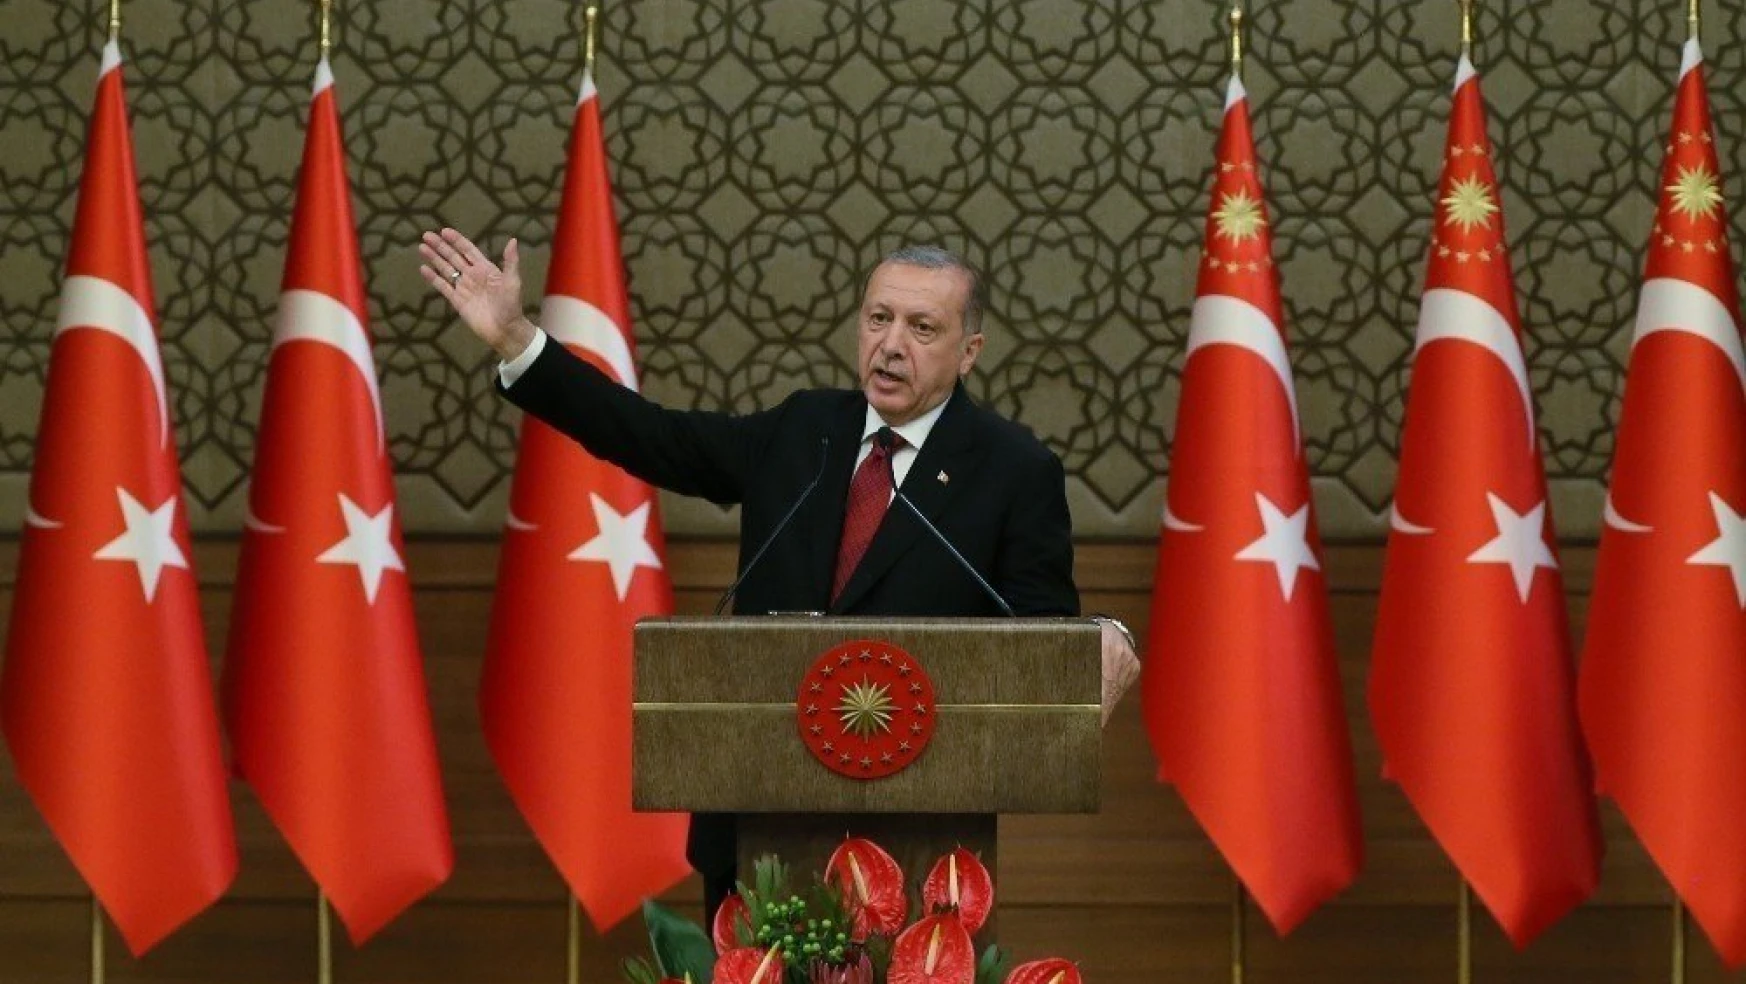 Başkan Erdoğan yeni sistemin ilk kabinesini açıkladı